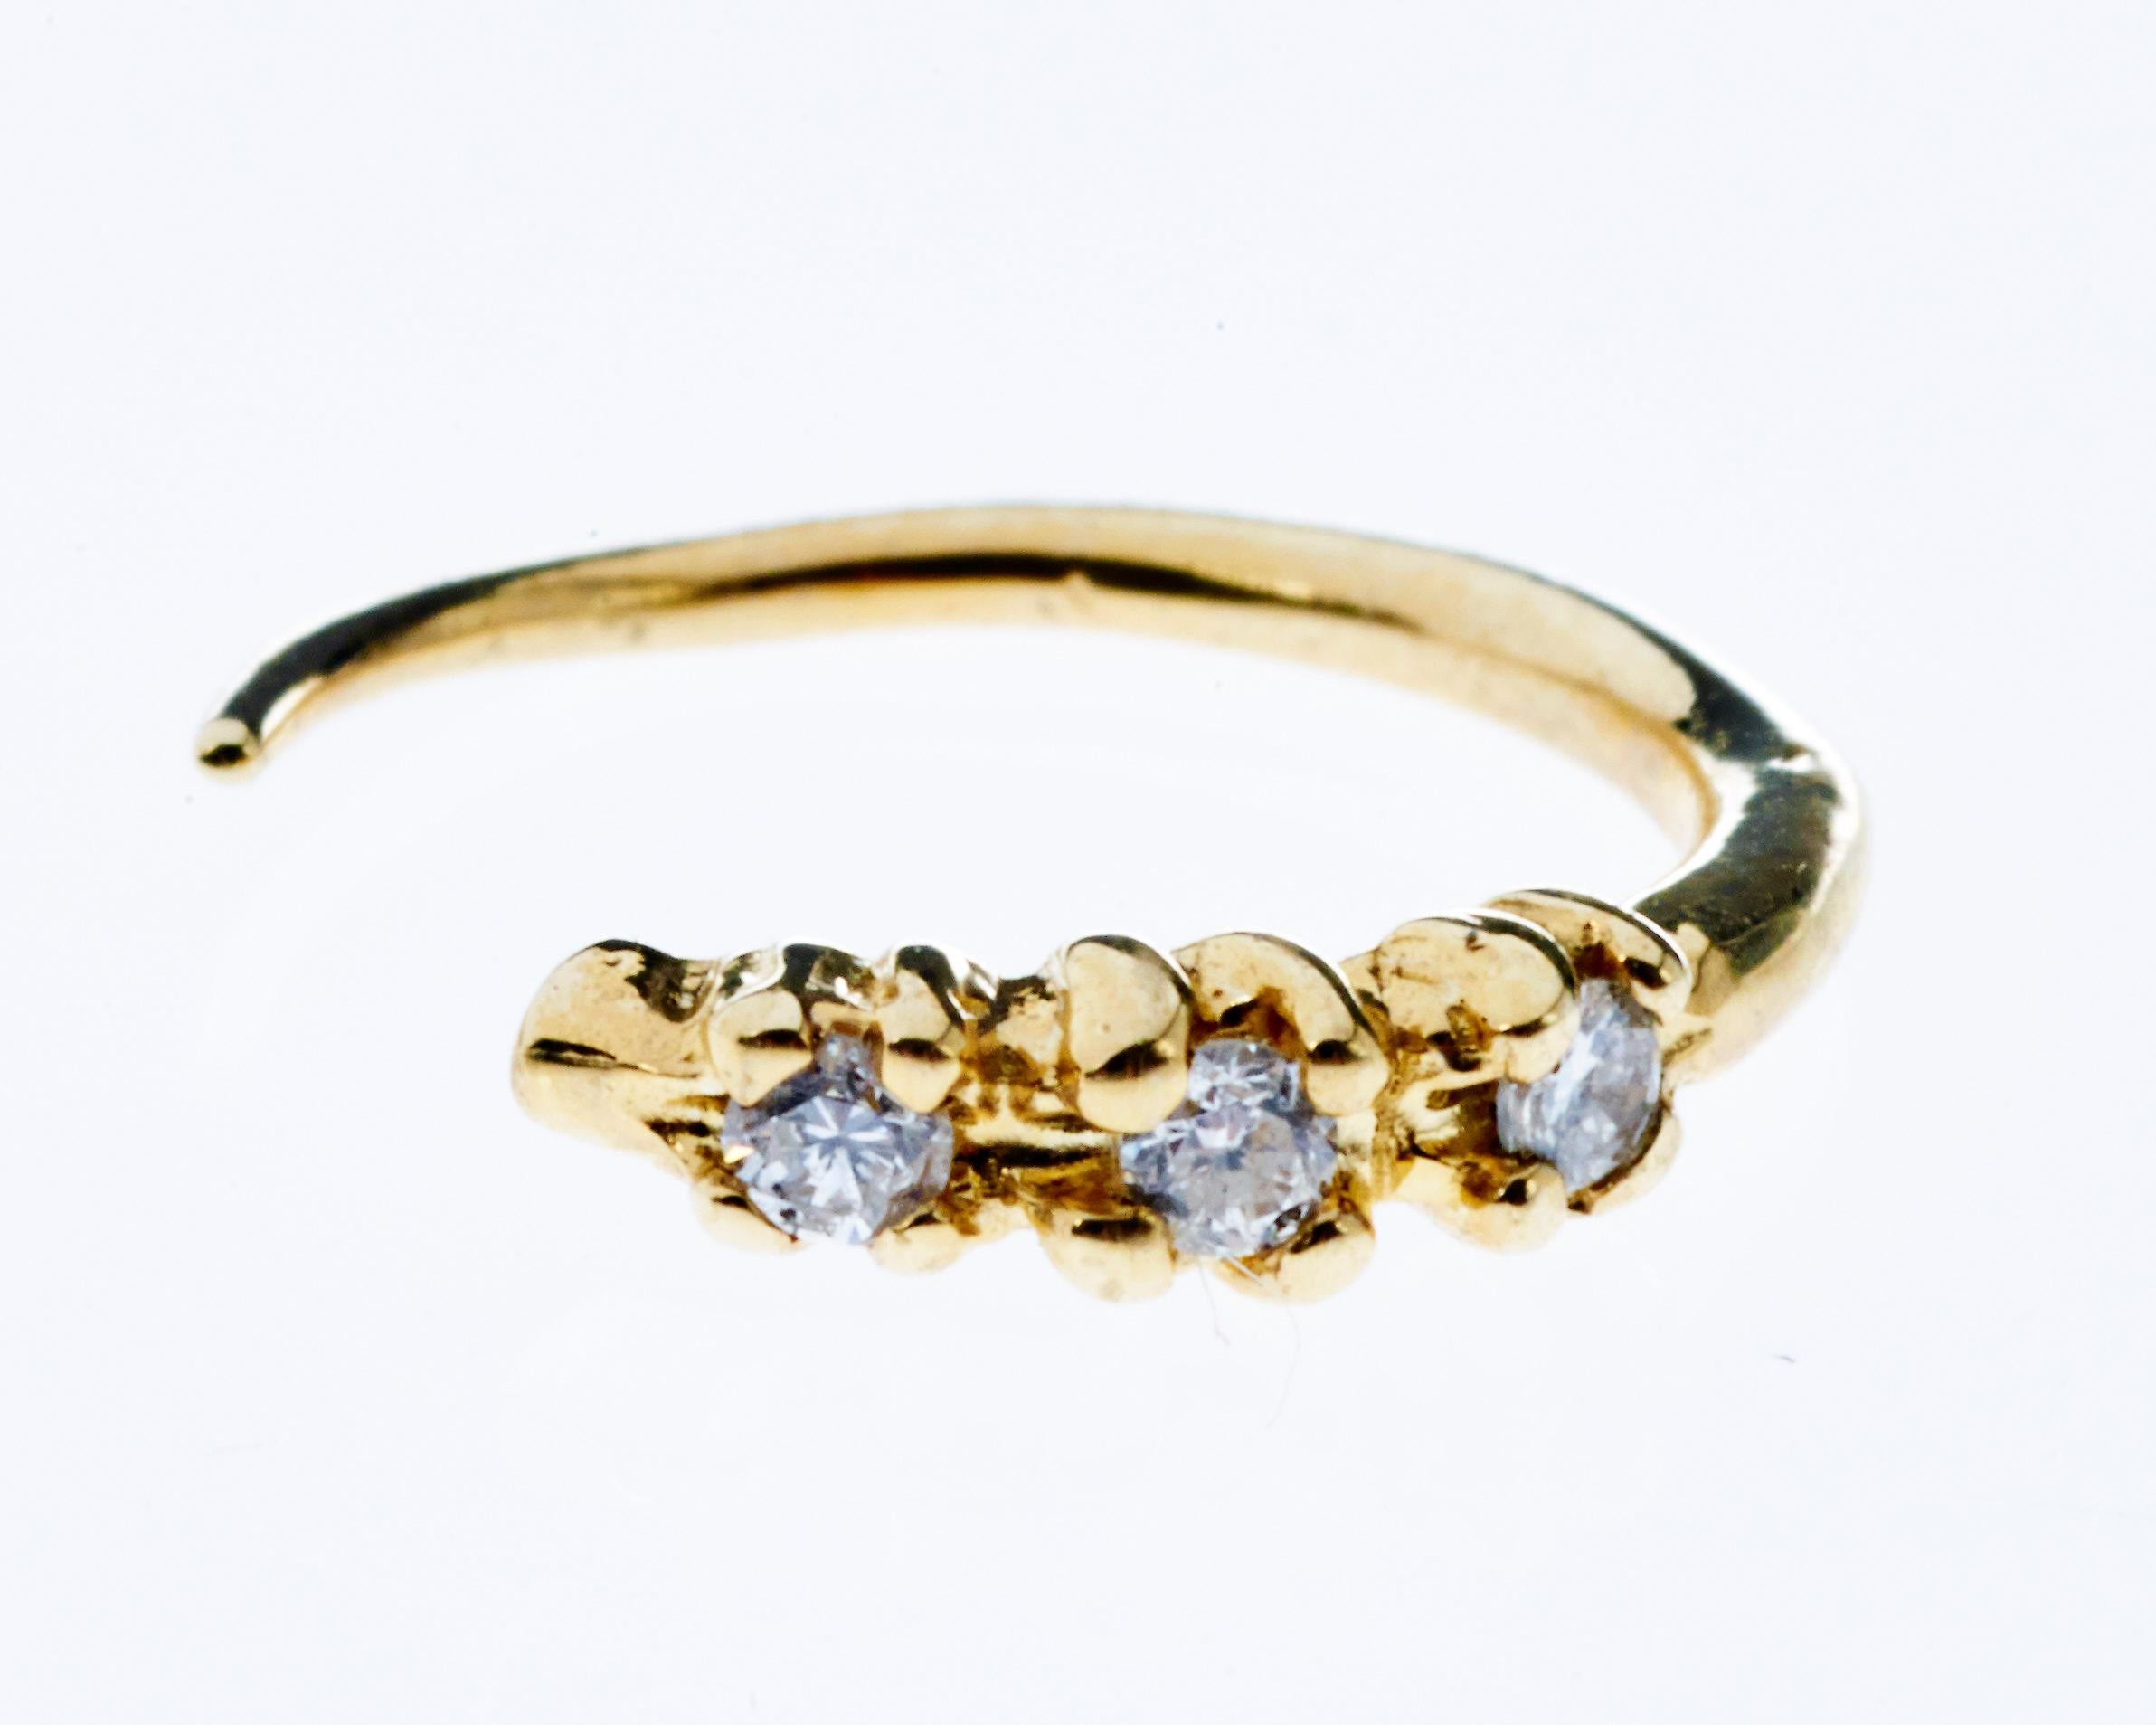 Weiße Diamanten Gold  Ohrringe Piercinghaken J Dauphin
Einzelner Ohrring

Handgefertigt in Los Angeles

Auf Bestellung gefertigt, 4 Wochen bis zur Fertigstellung